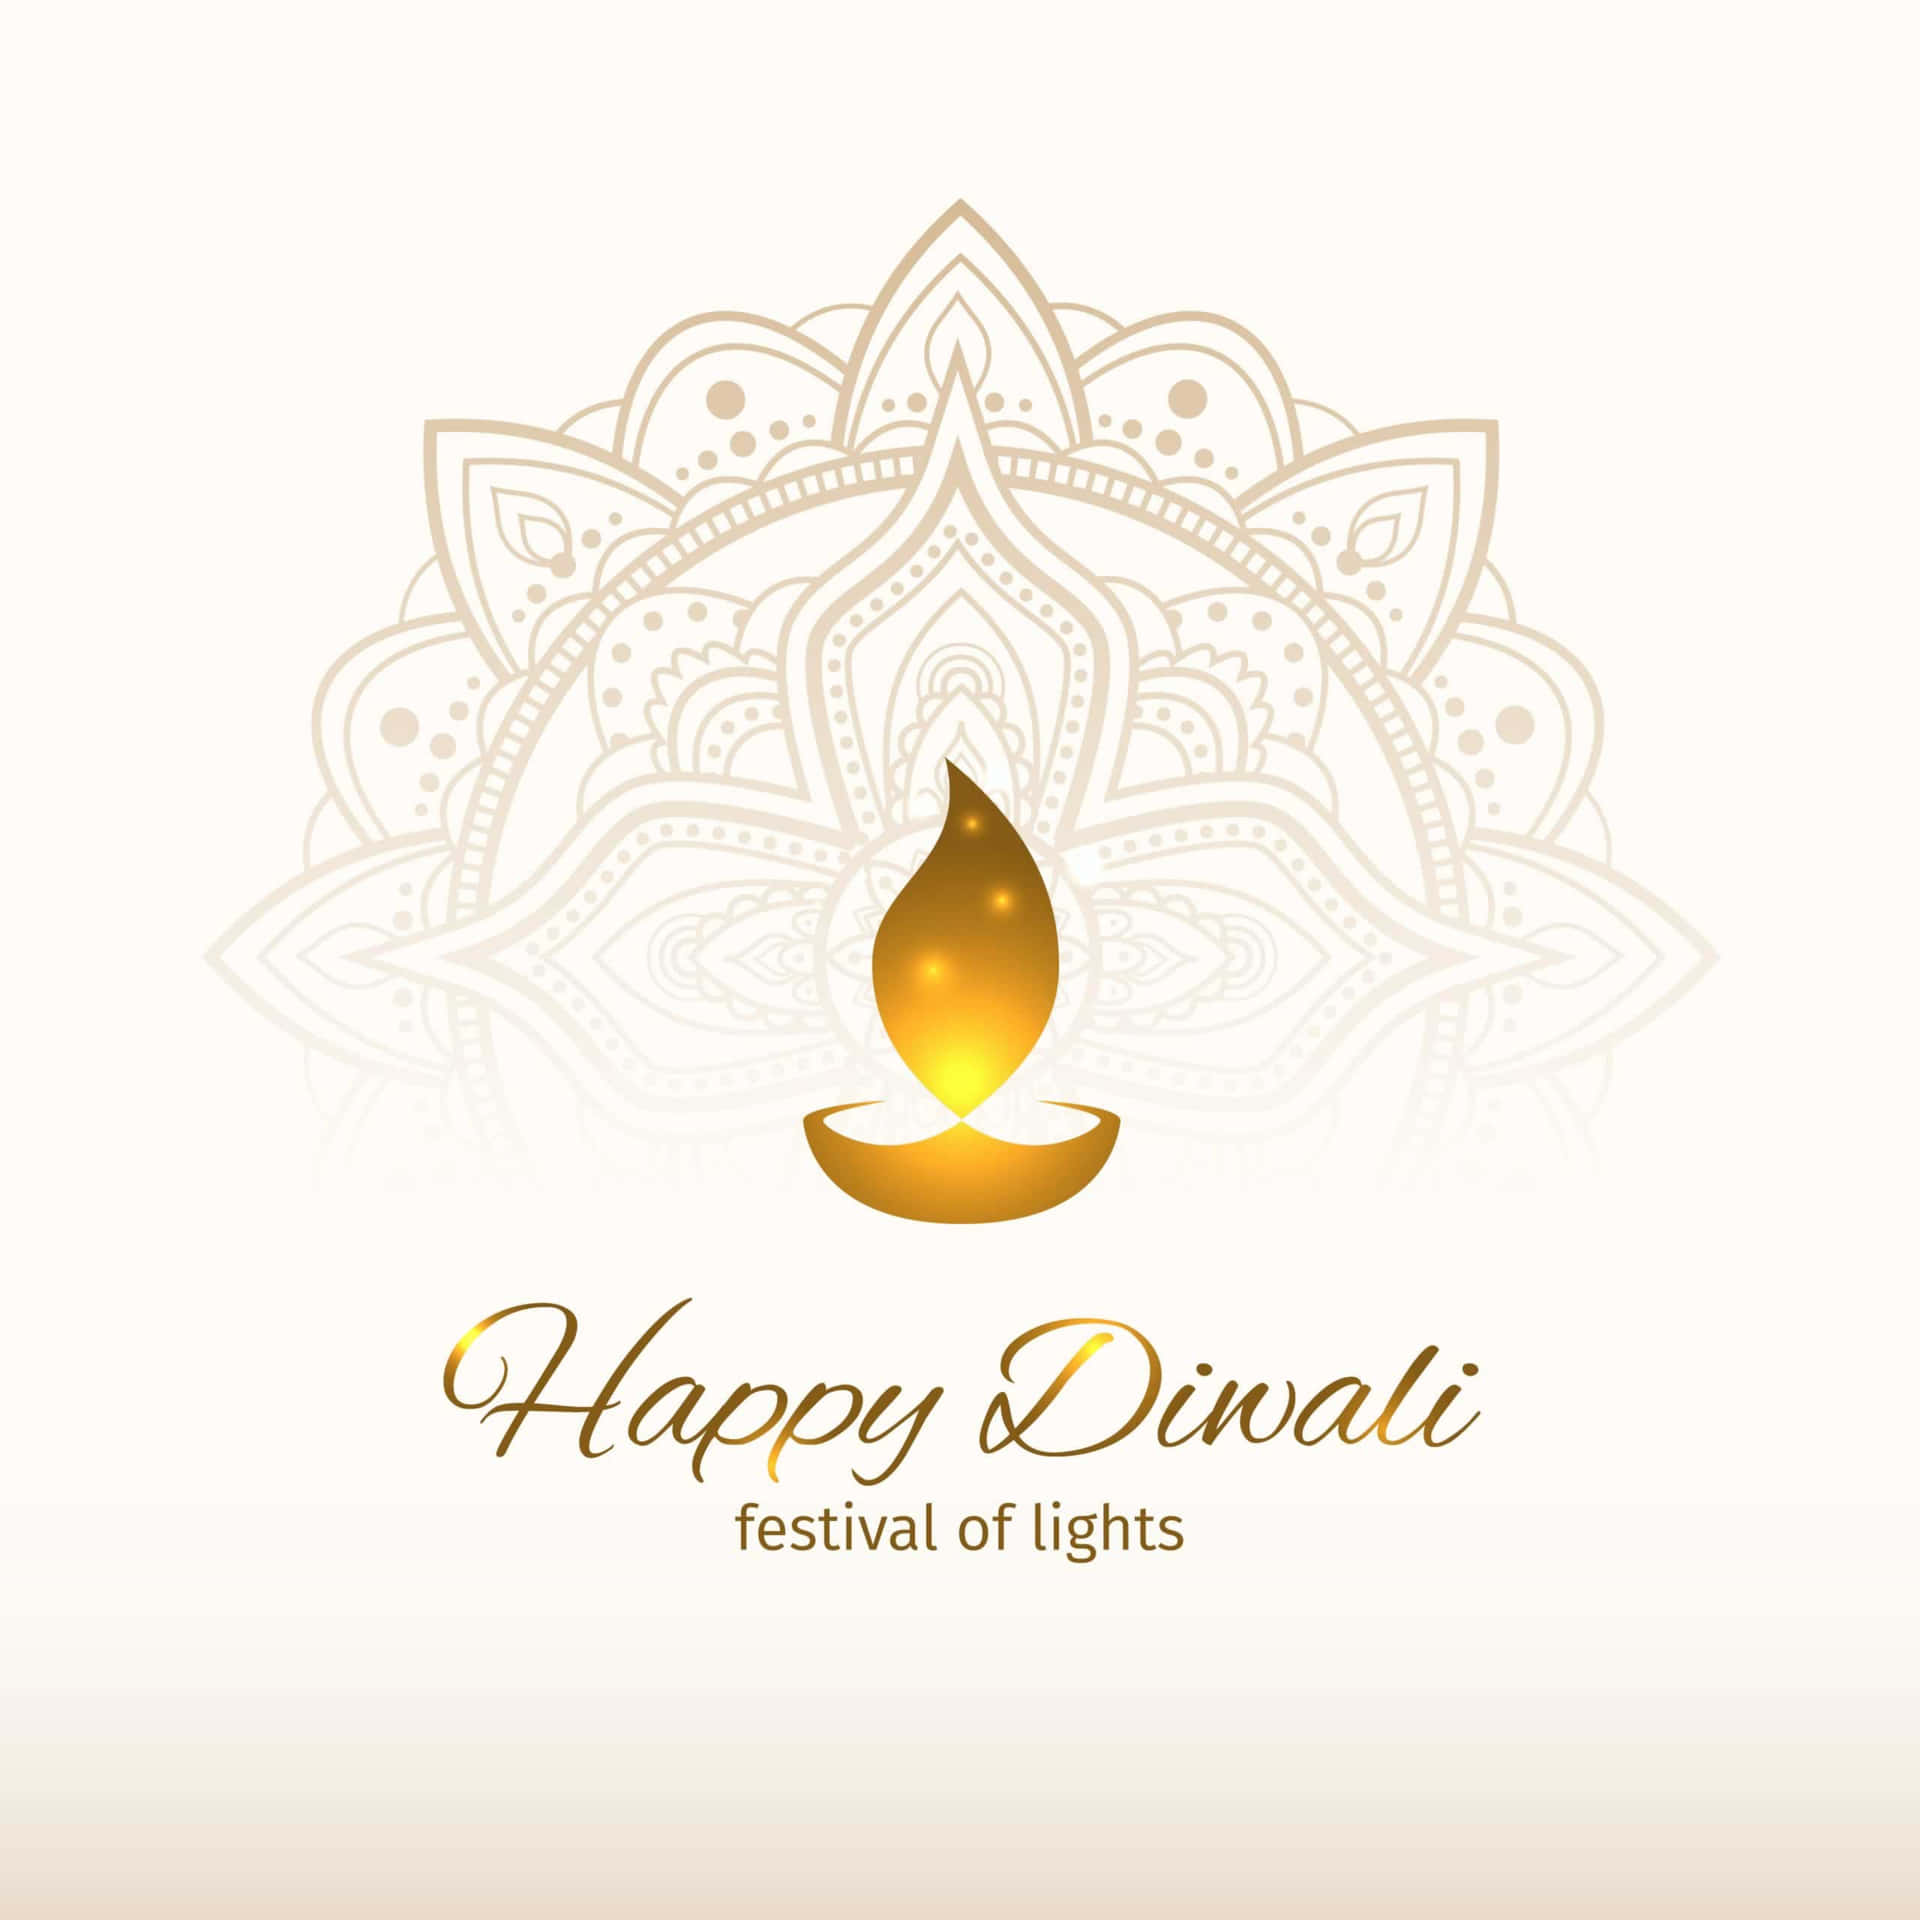 Sfondofestivo Di Diwali, Il Festival Delle Luci, Con Candela Dorata